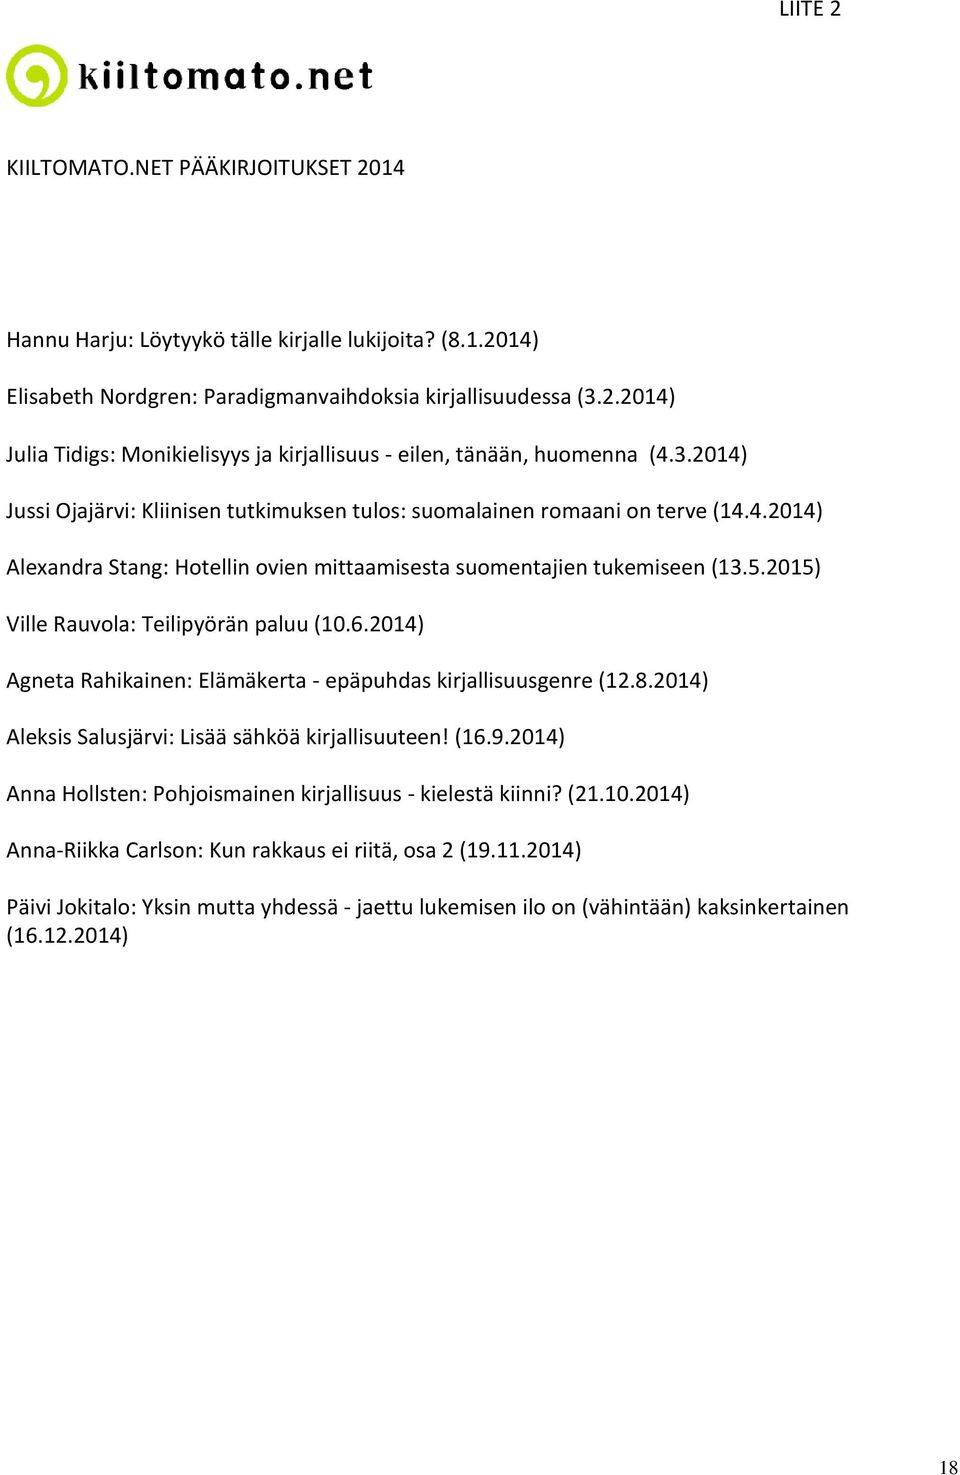 2015) Ville Rauvola: Teilipyörän paluu (10.6.2014) Agneta Rahikainen: Elämäkerta - epäpuhdas kirjallisuusgenre (12.8.2014) Aleksis Salusjärvi: Lisää sähköä kirjallisuuteen! (16.9.